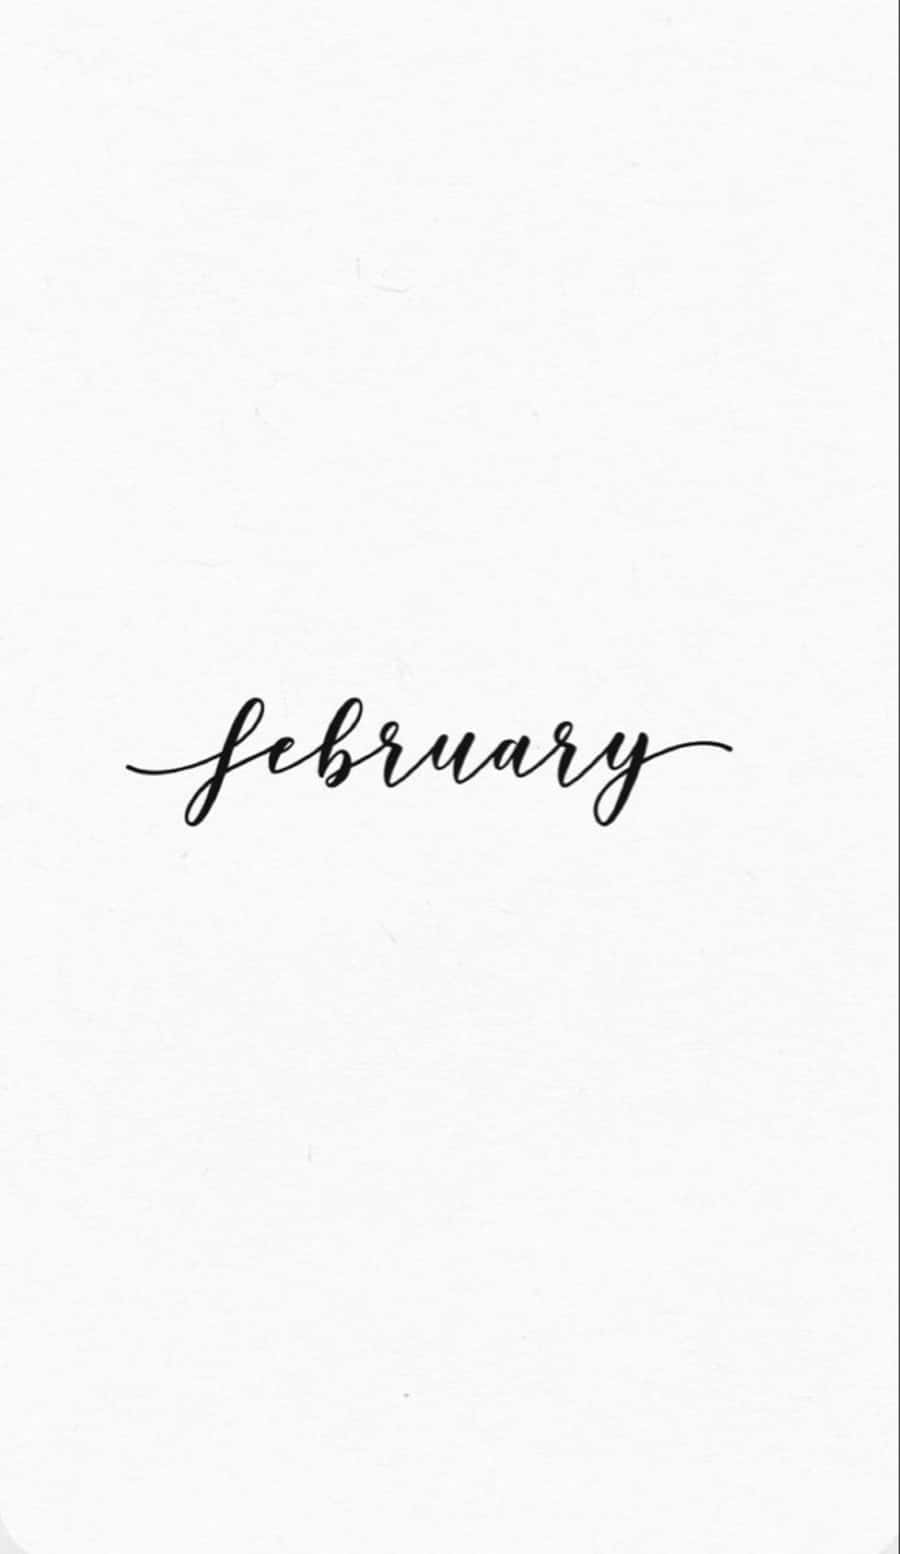 February iPhone Calendar Wallpaper Wallpaper